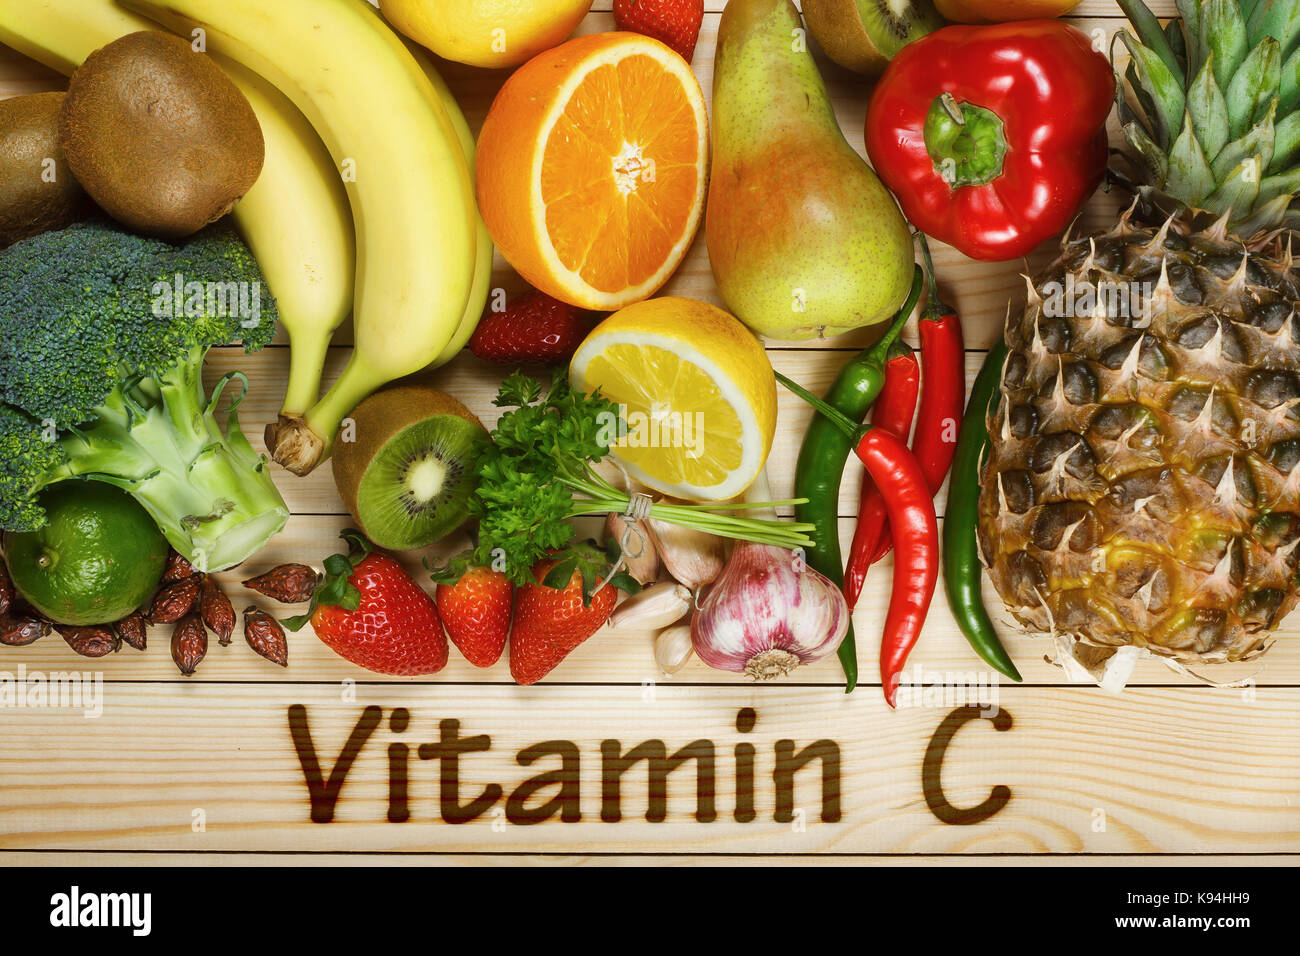 La vitamine C dans les fruits et légumes. Les produits naturels riches en vitamine c comme les oranges, citrons, fruits secs, rose, poivron rouge, kiwi, les feuilles de persil, ail Banque D'Images